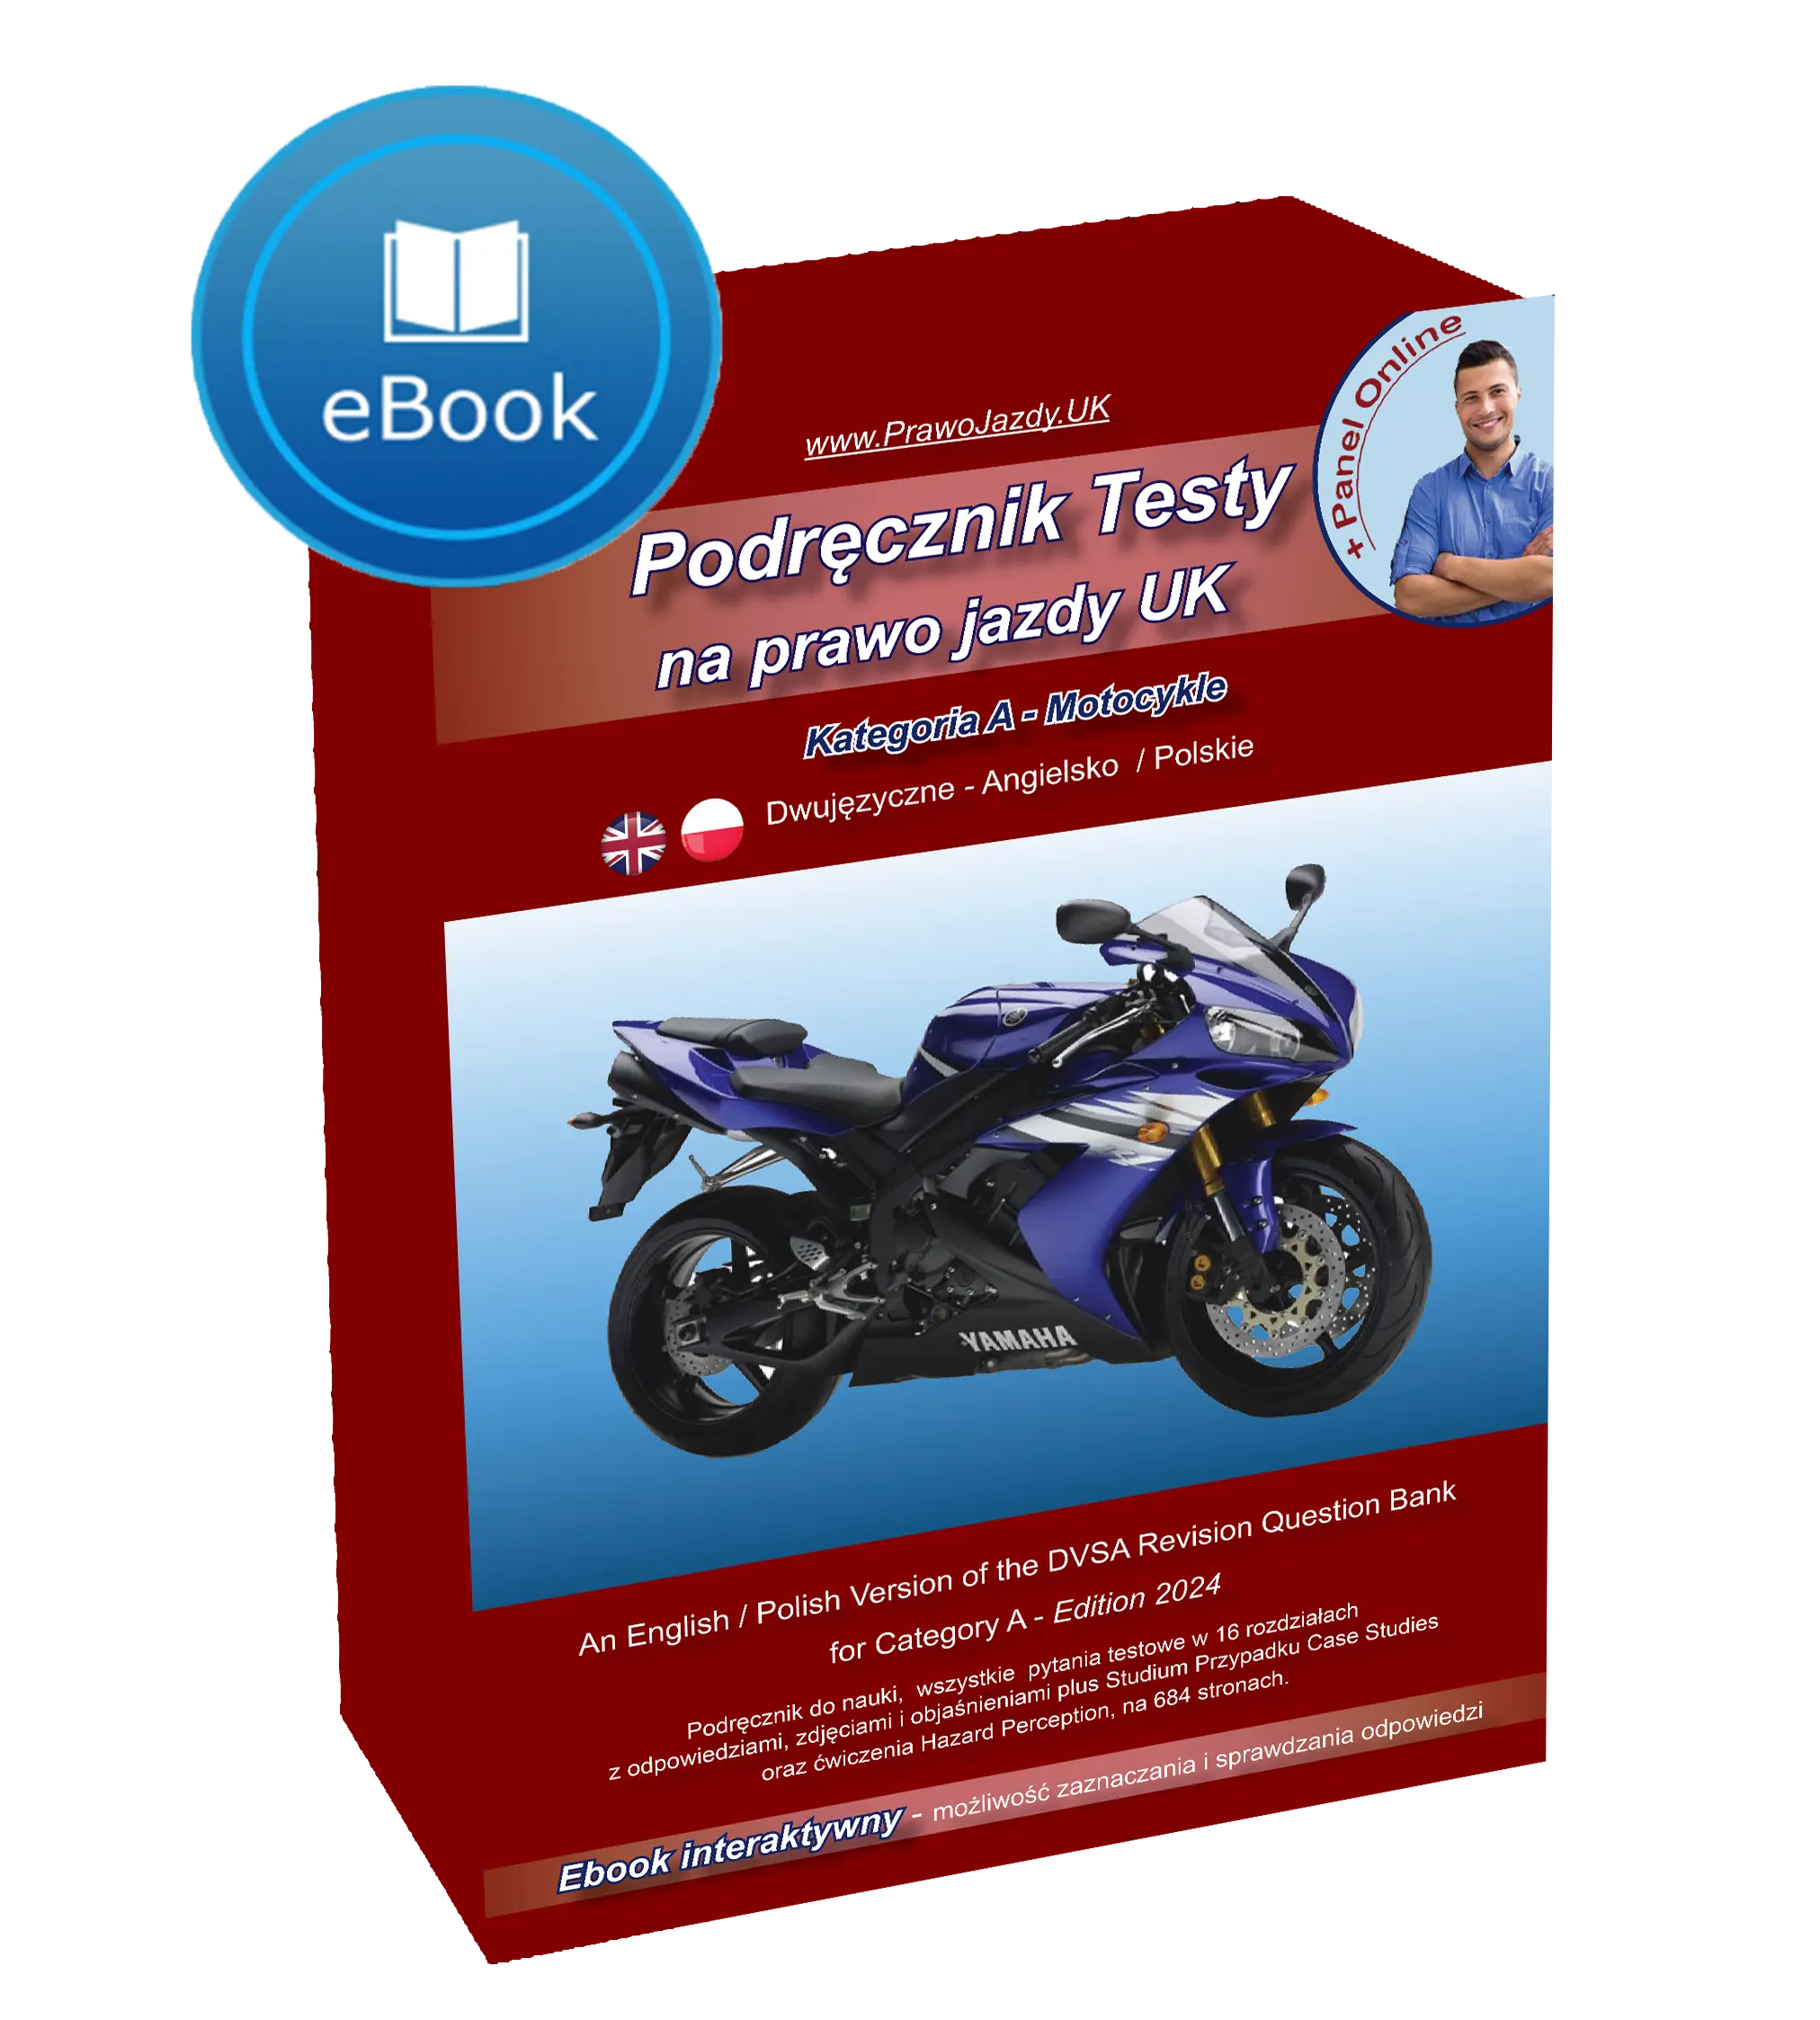 Apka Książka Podręcznik testy motocykle prawo jazdy UK po polsku